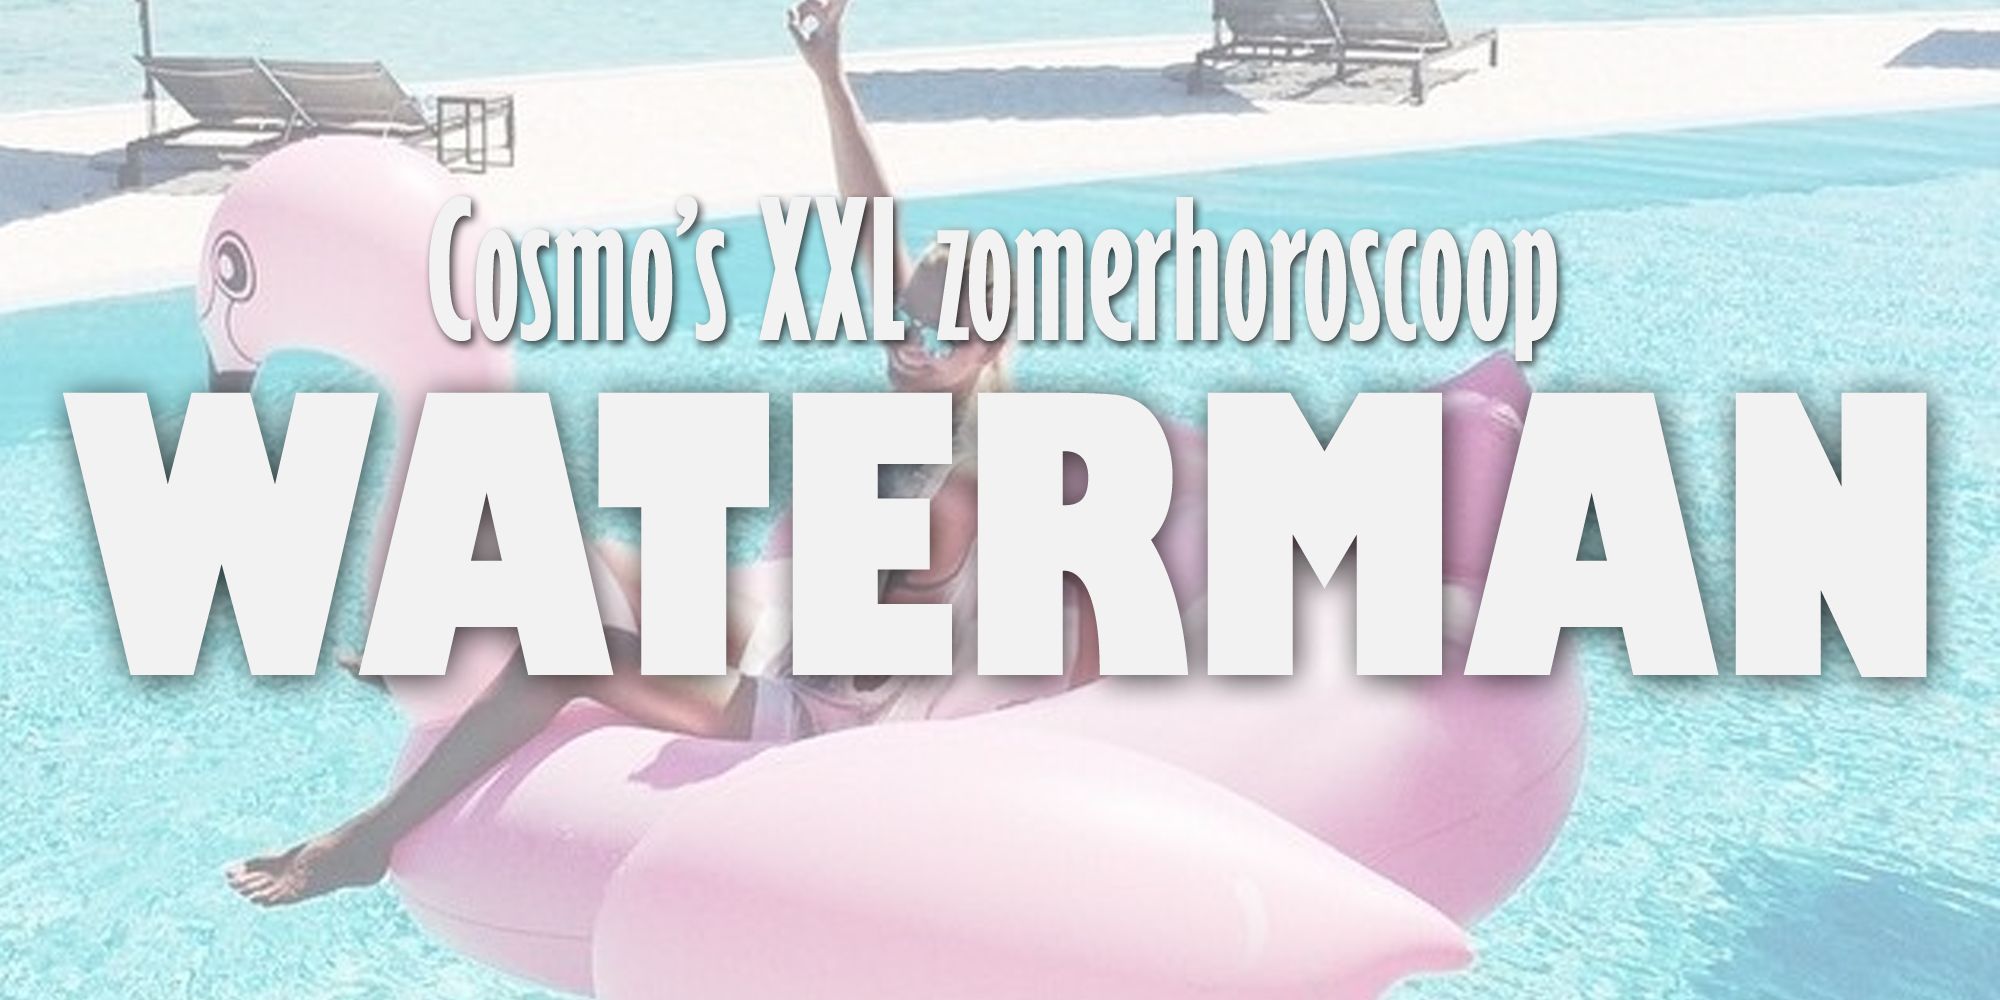 Cosmos Xxl Vakantiehoroscoop Waterman